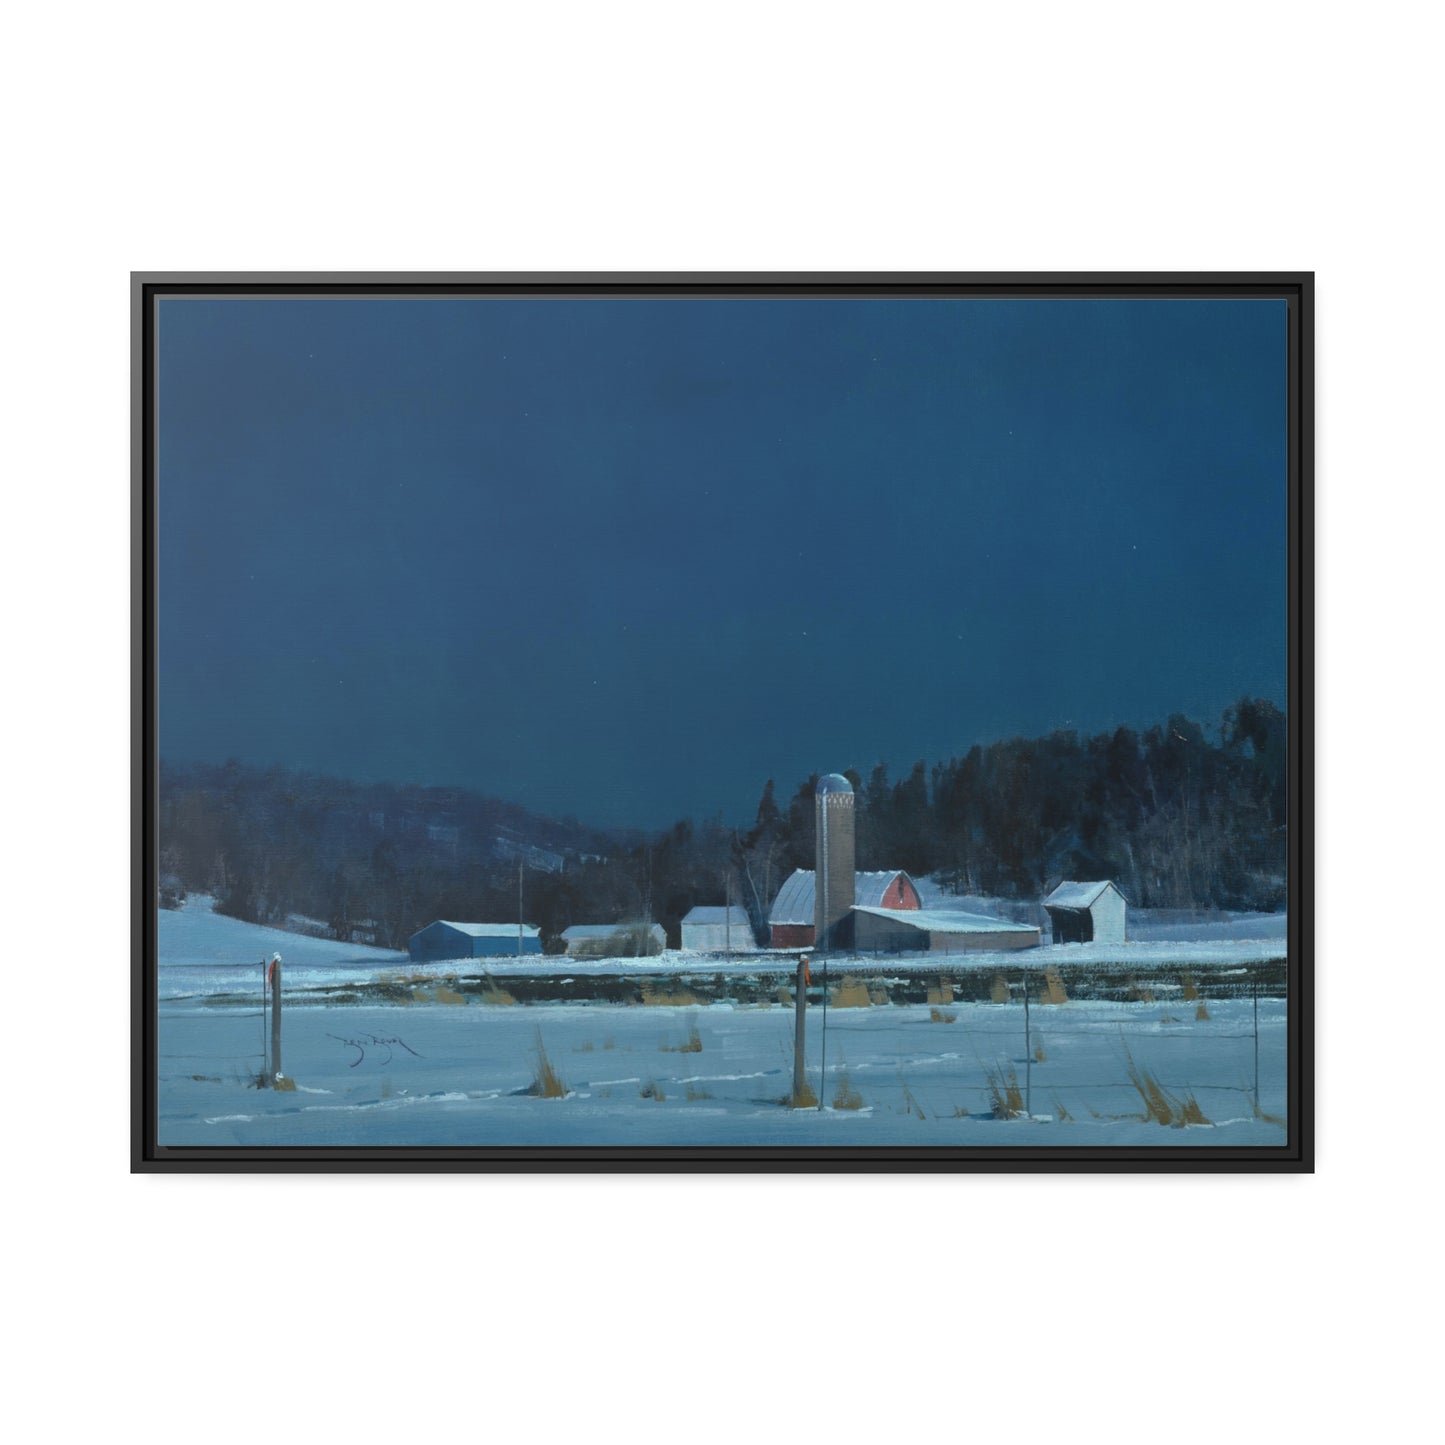 Ben Bauer: "Drifting Moonlight" - Framed Canvas Reproduction